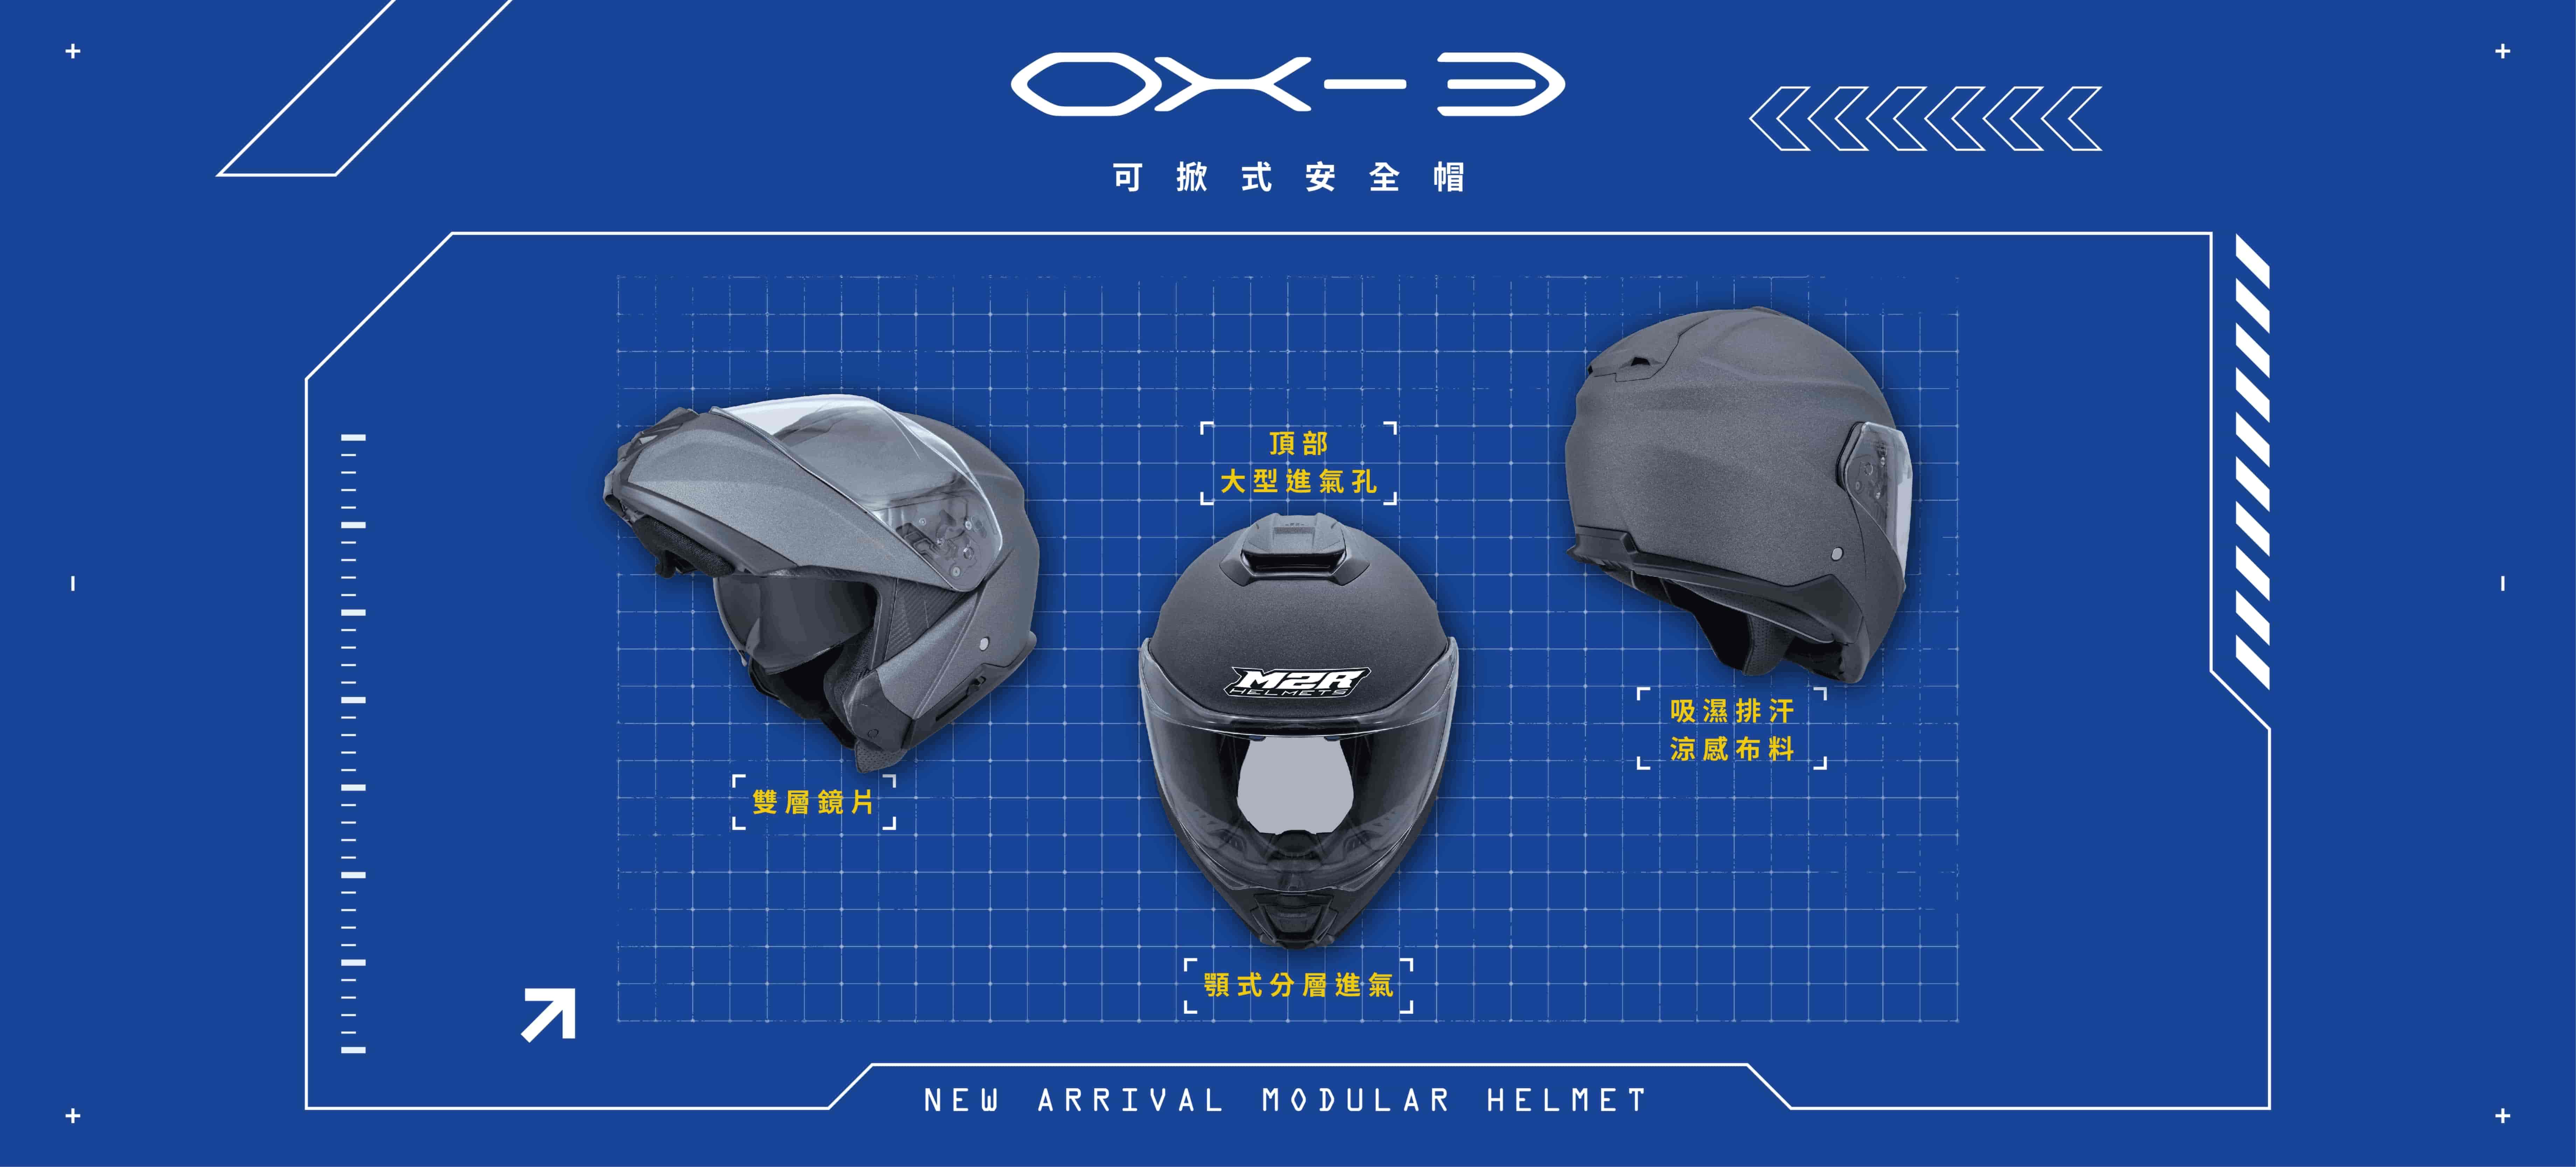 M2R OX-3可掀式汽水帽/可樂帽、最大到3XL，可適用於頭圍較大使用者、頂部大型進氣孔、雙層鏡片、吸濕排汗涼感布料、顎式分層進氣。